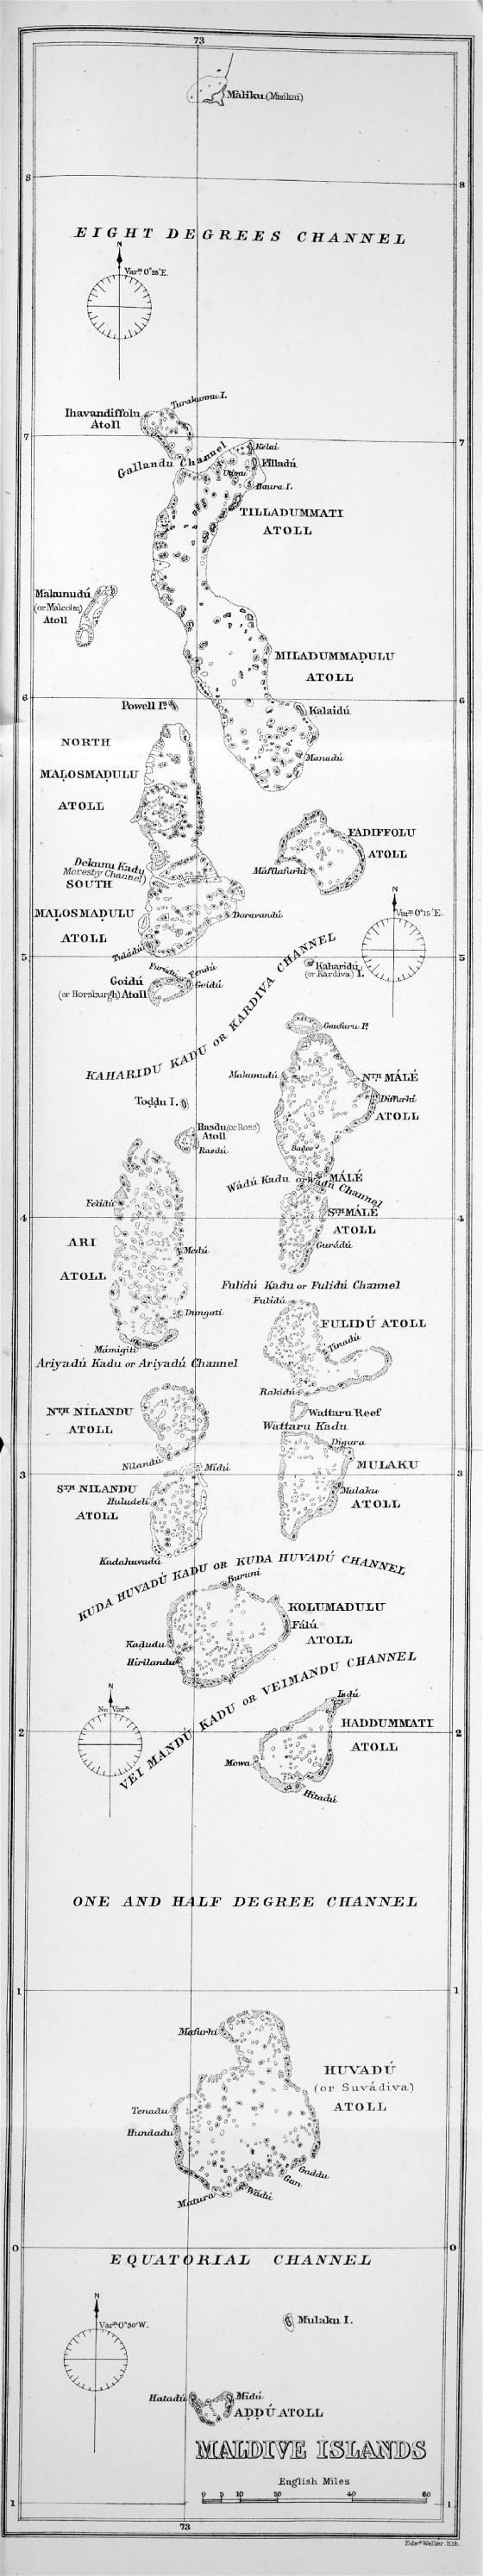 Grande detallado mapa antiguo de Maldivas